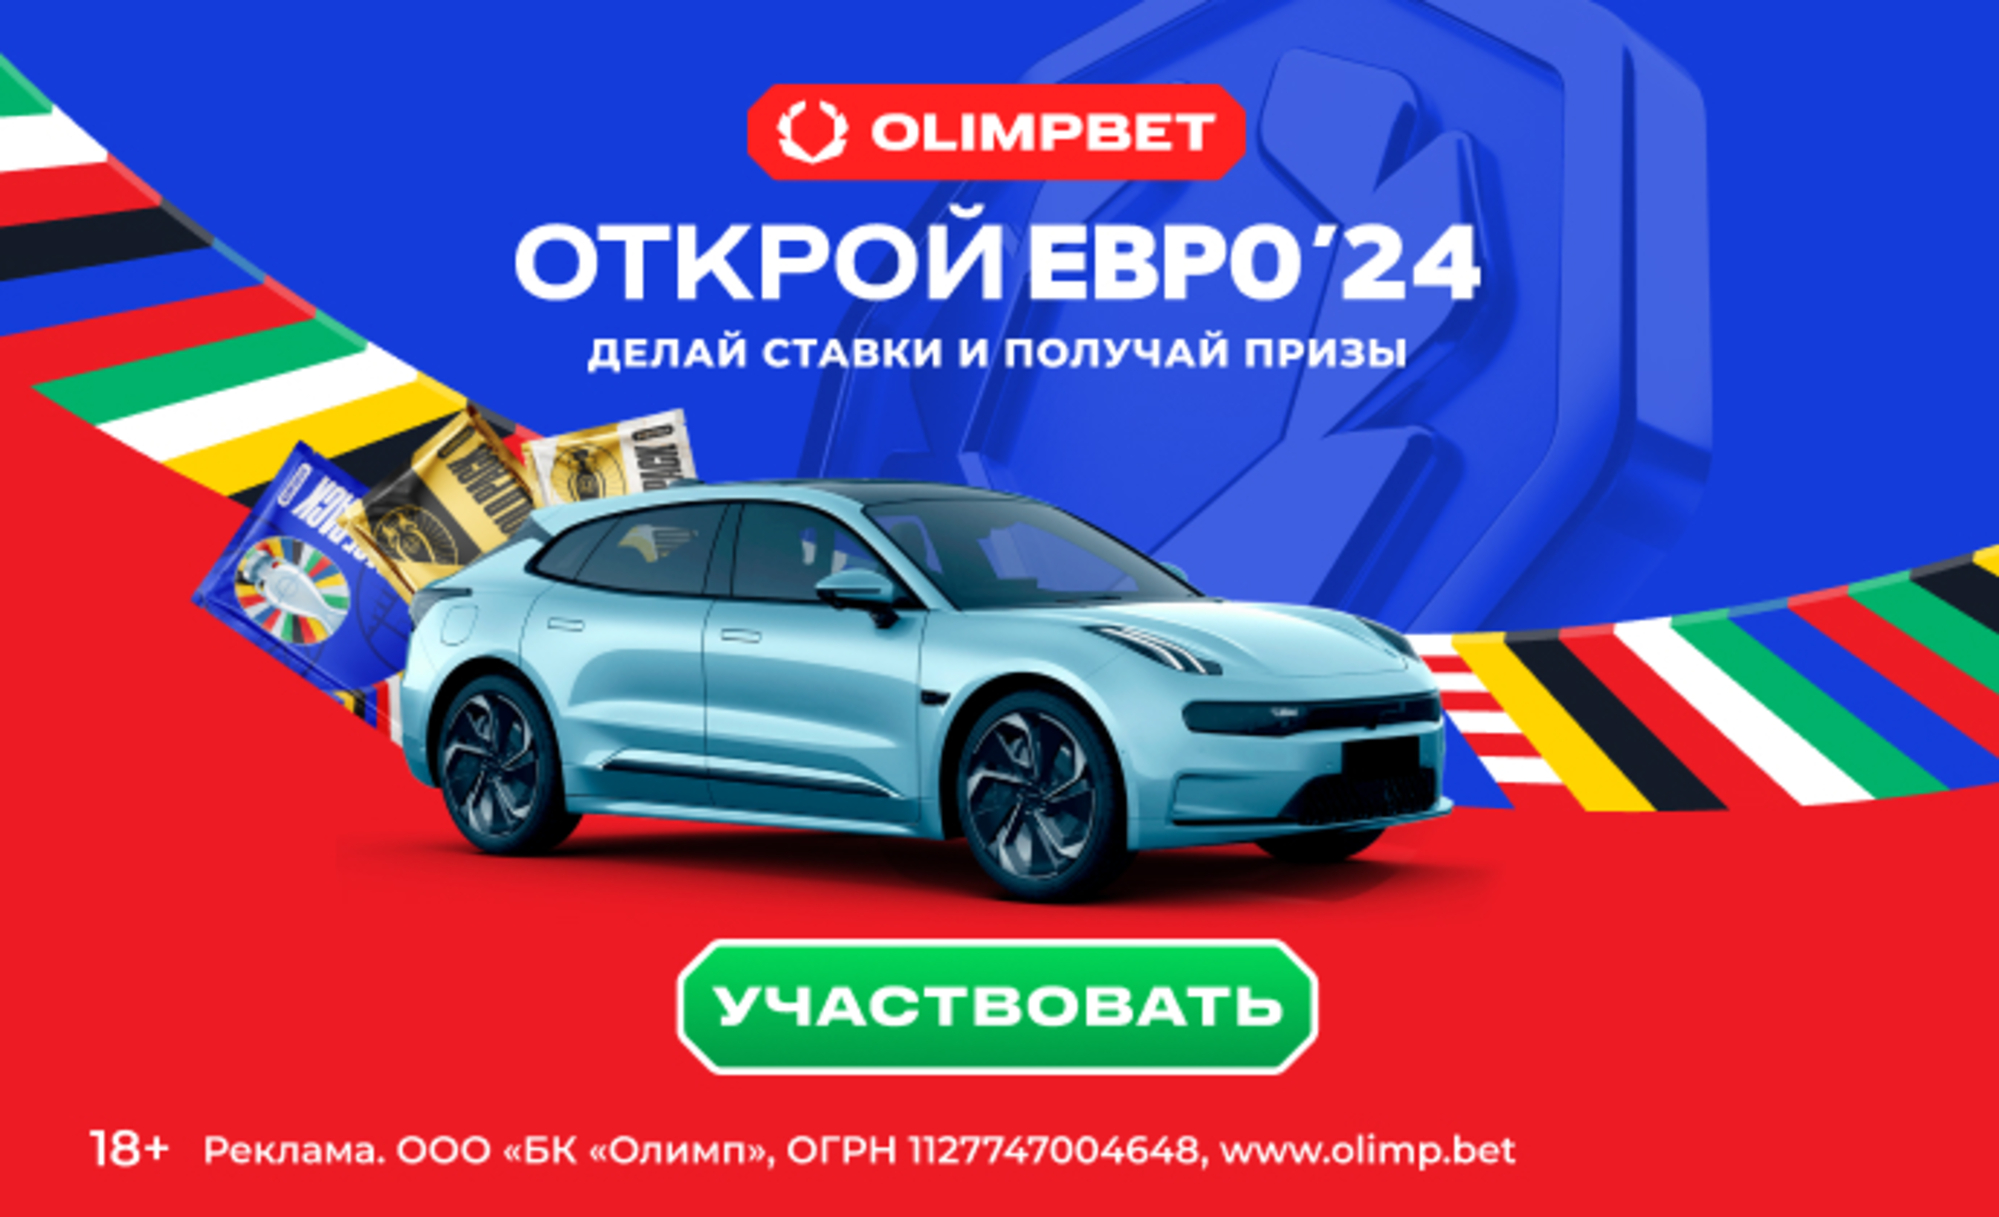 Розыгрыш в ОLIMPBET: автомобиль, iPhone, фрибеты до 10000 рублей и многое другое